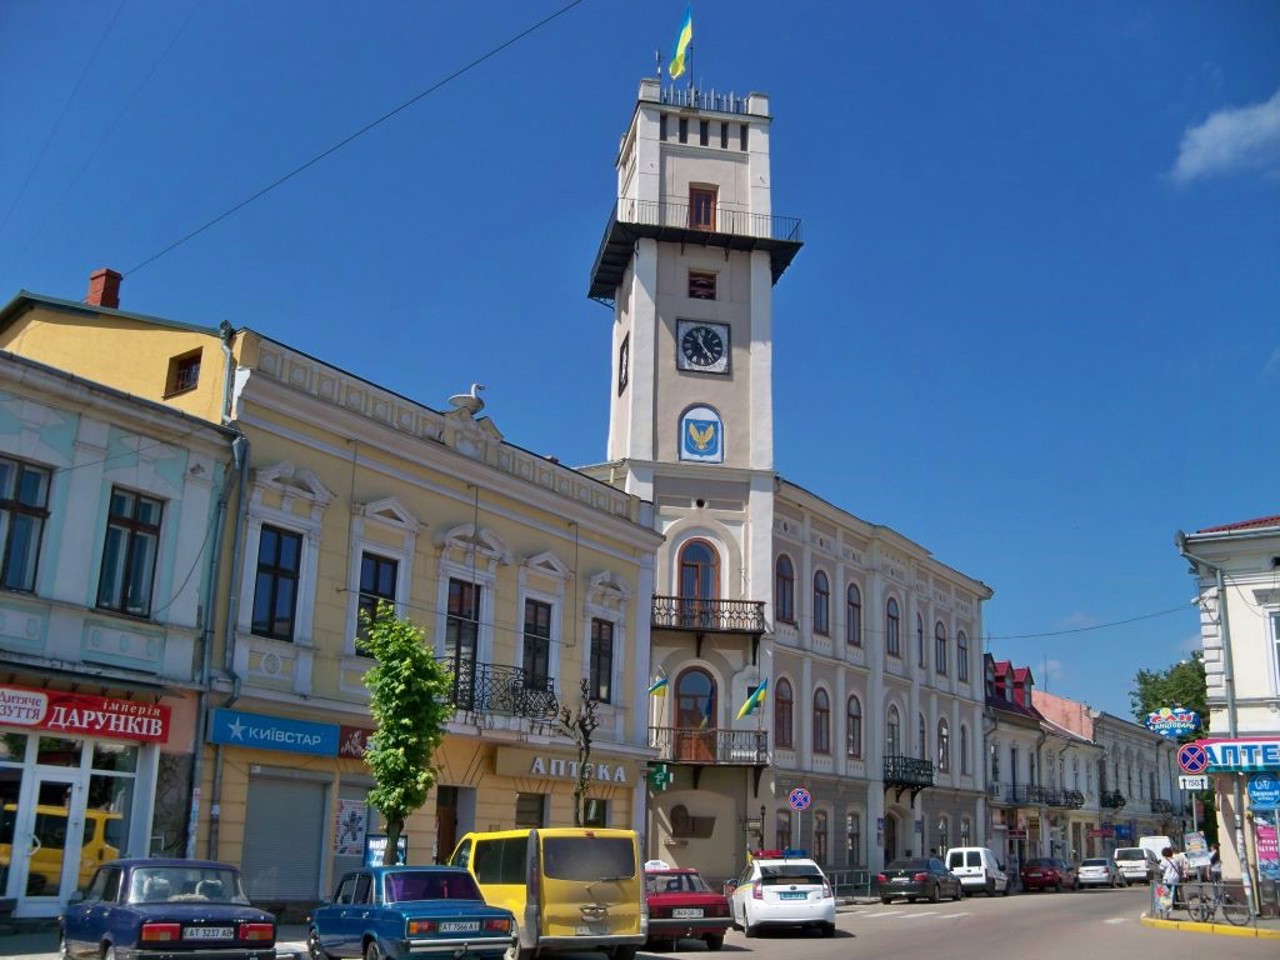 Kolomyia city